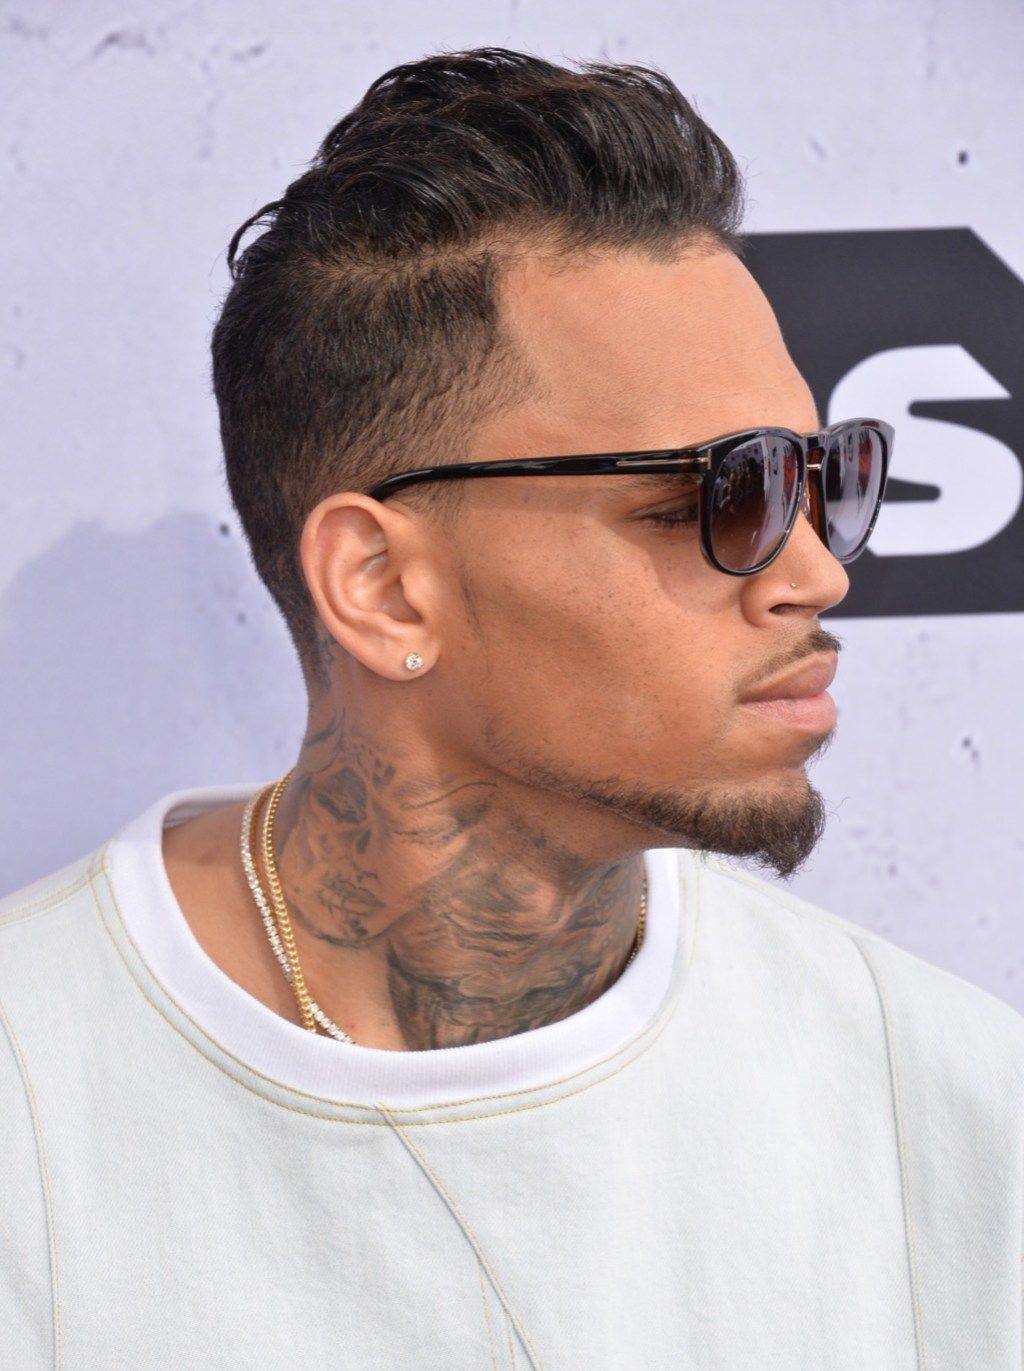 Lagu-lagu Chris Brown diam-diam ditulis oleh bintang-bintang besar